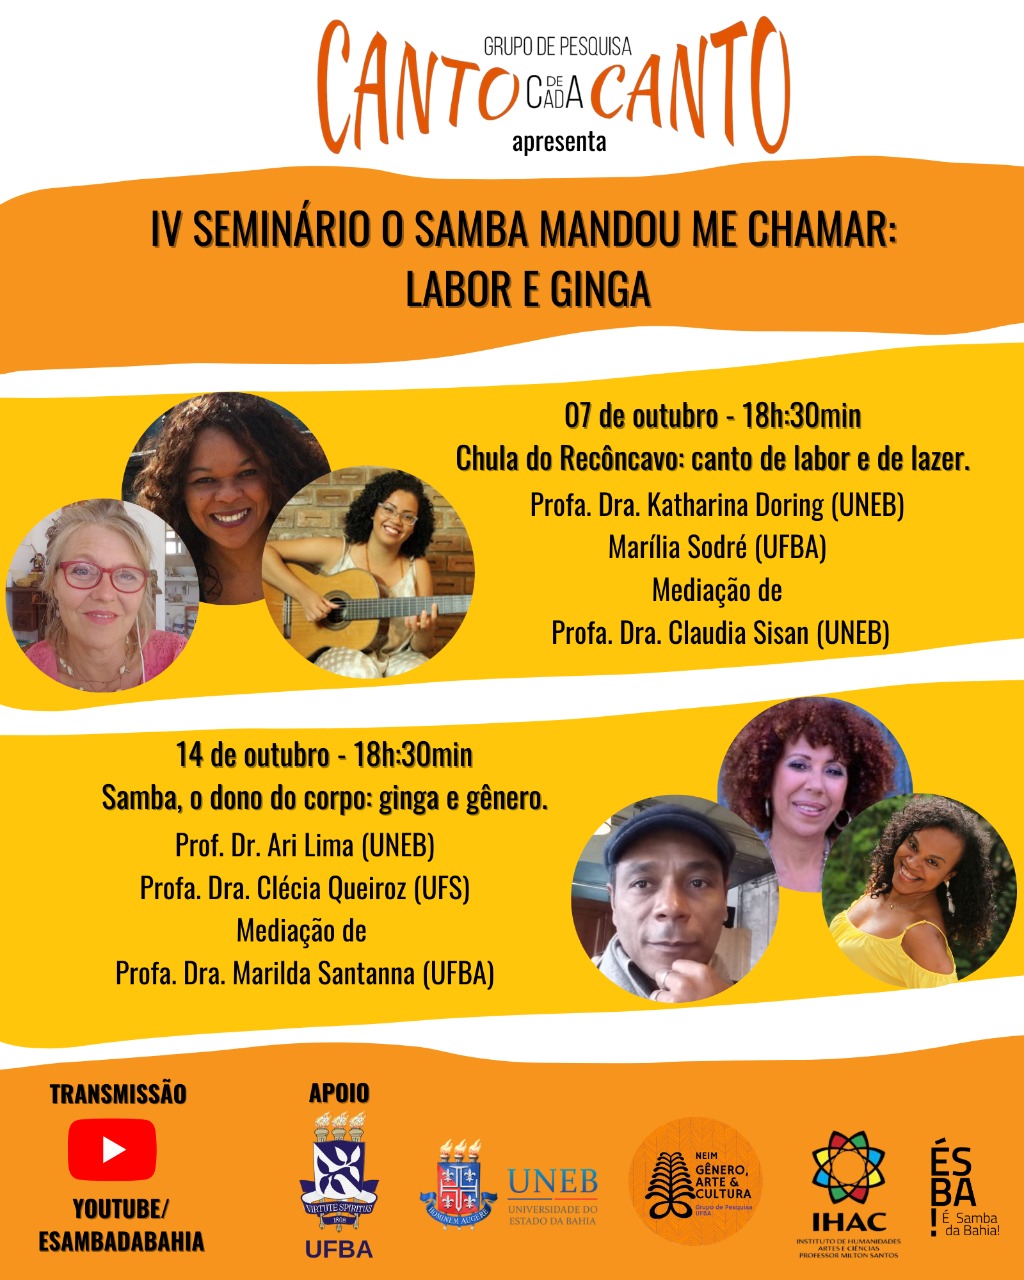 “IV Seminário o samba mandou me chamar: labor e ginga” acontecerá em formato virtual nos dias 7 e 14 de outubro